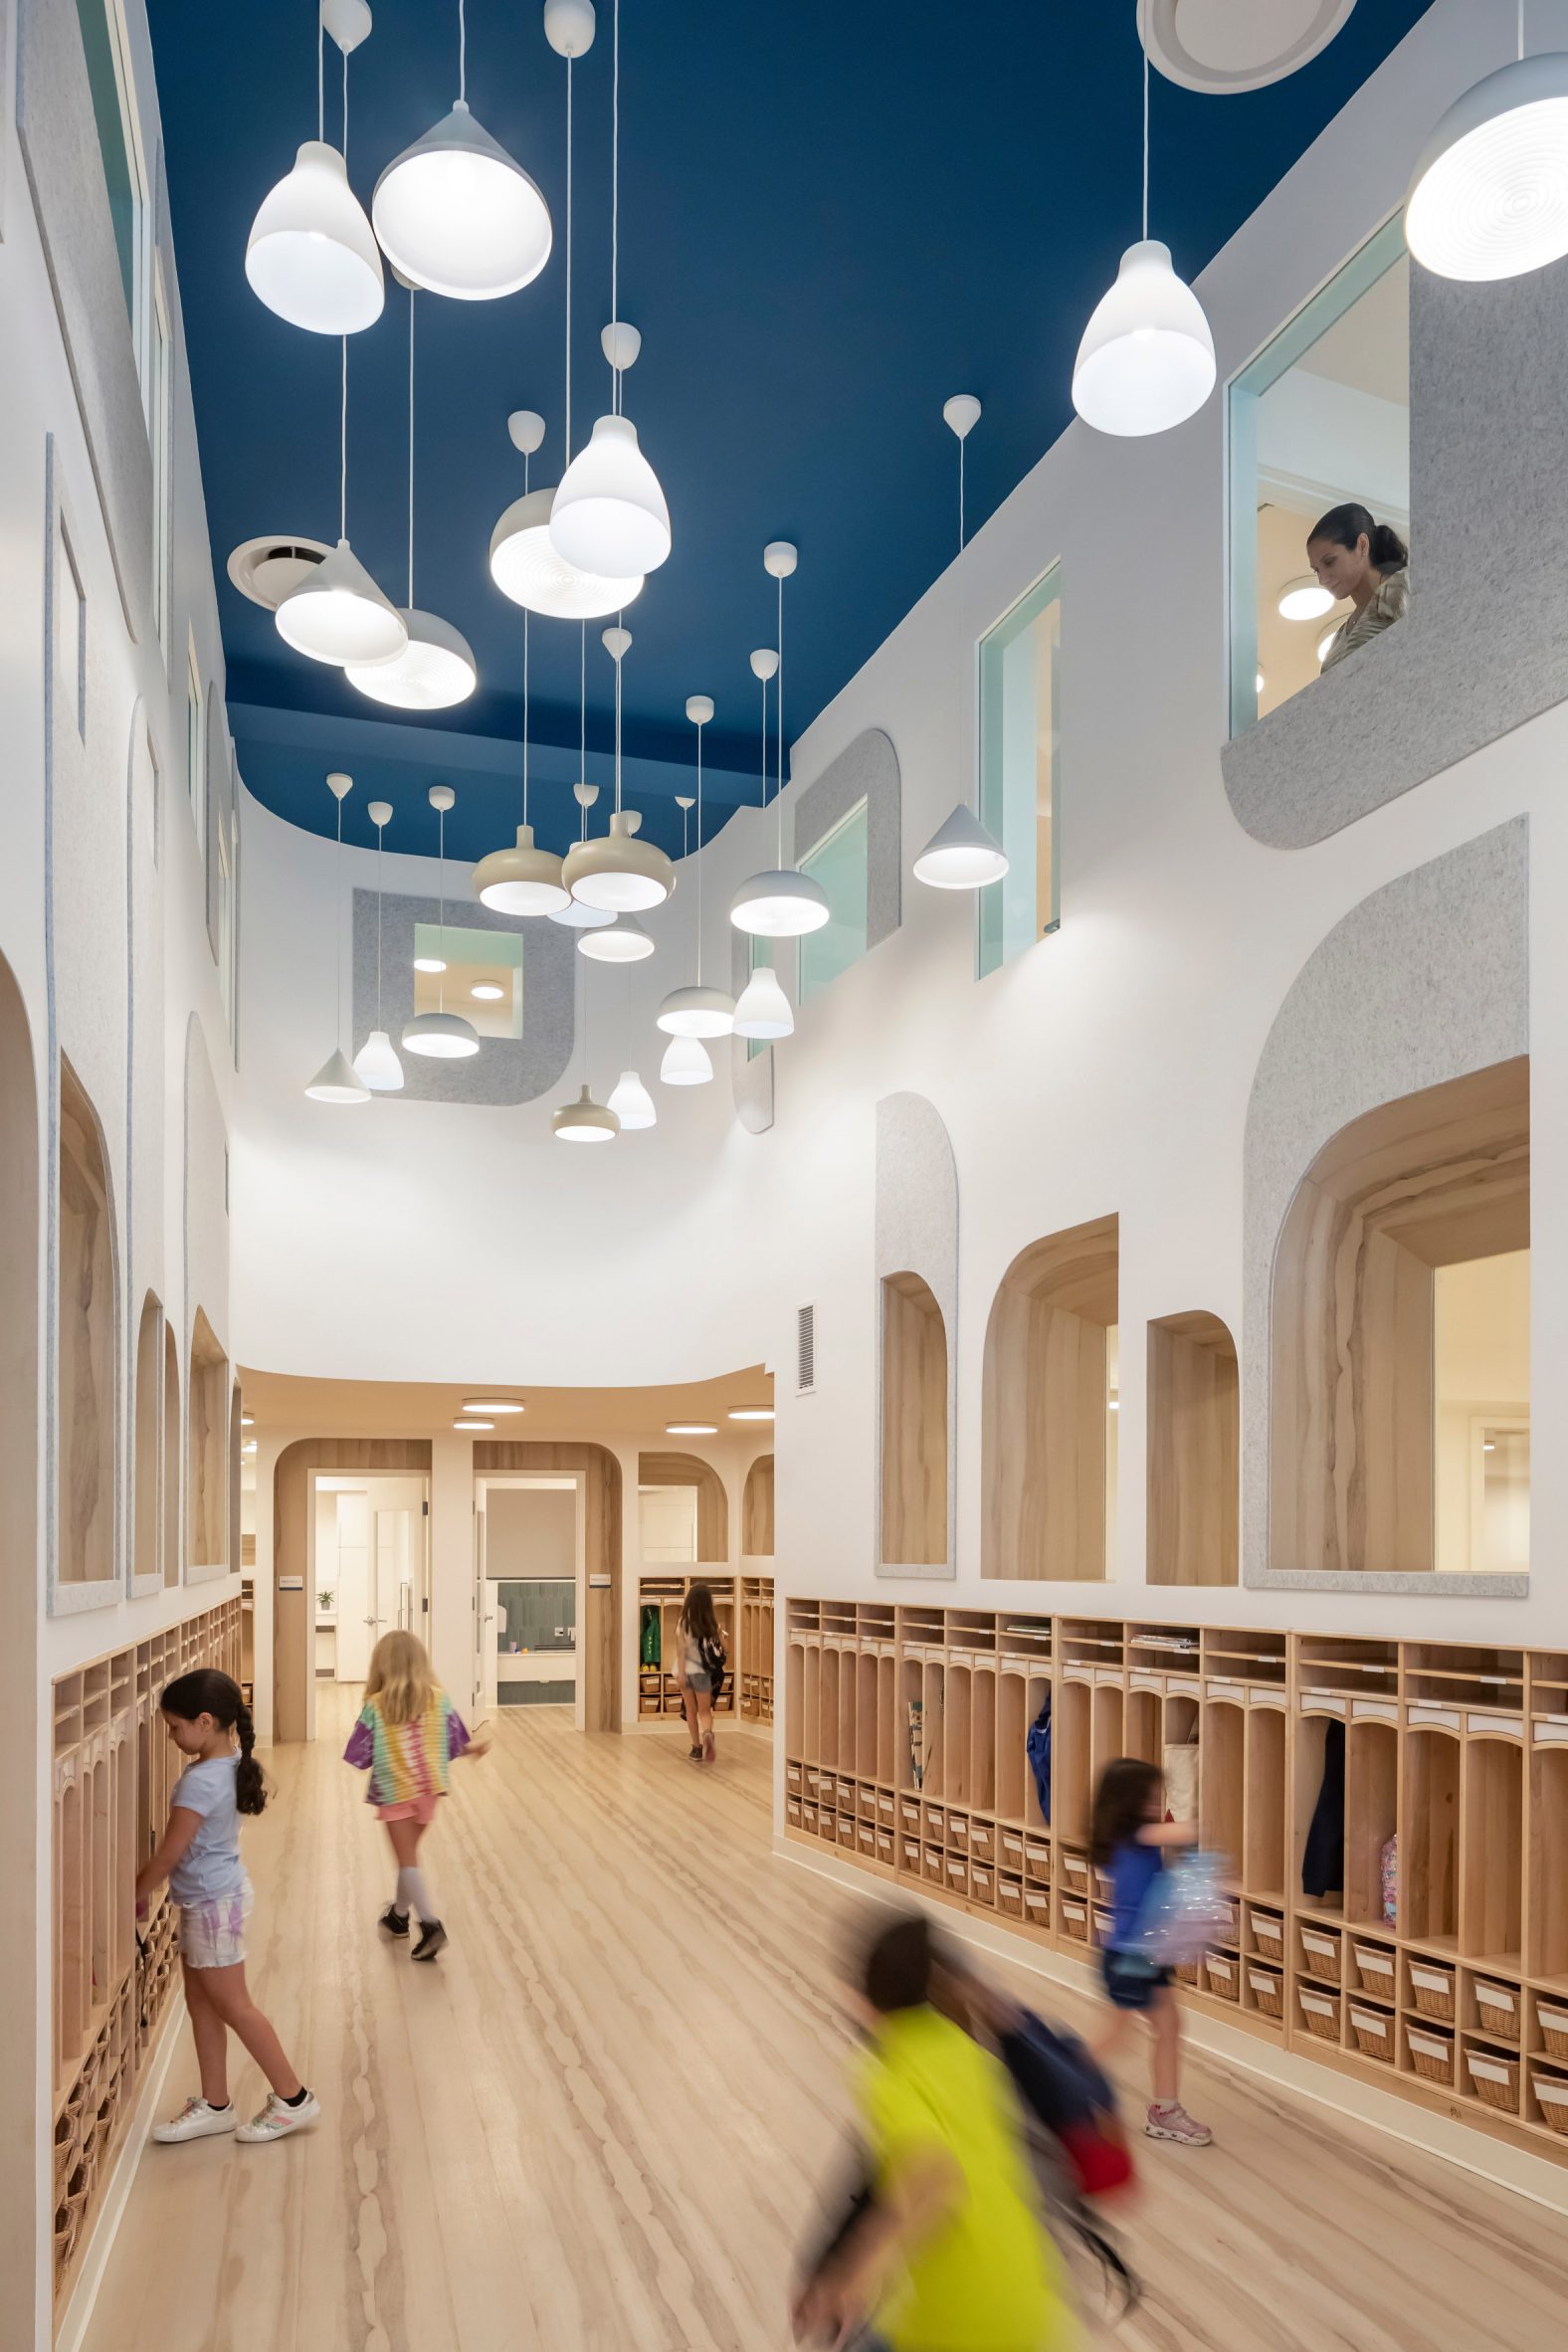 10+ Play School Interior Designs 2021 - Decoration Ideas (Classroom &  Building)